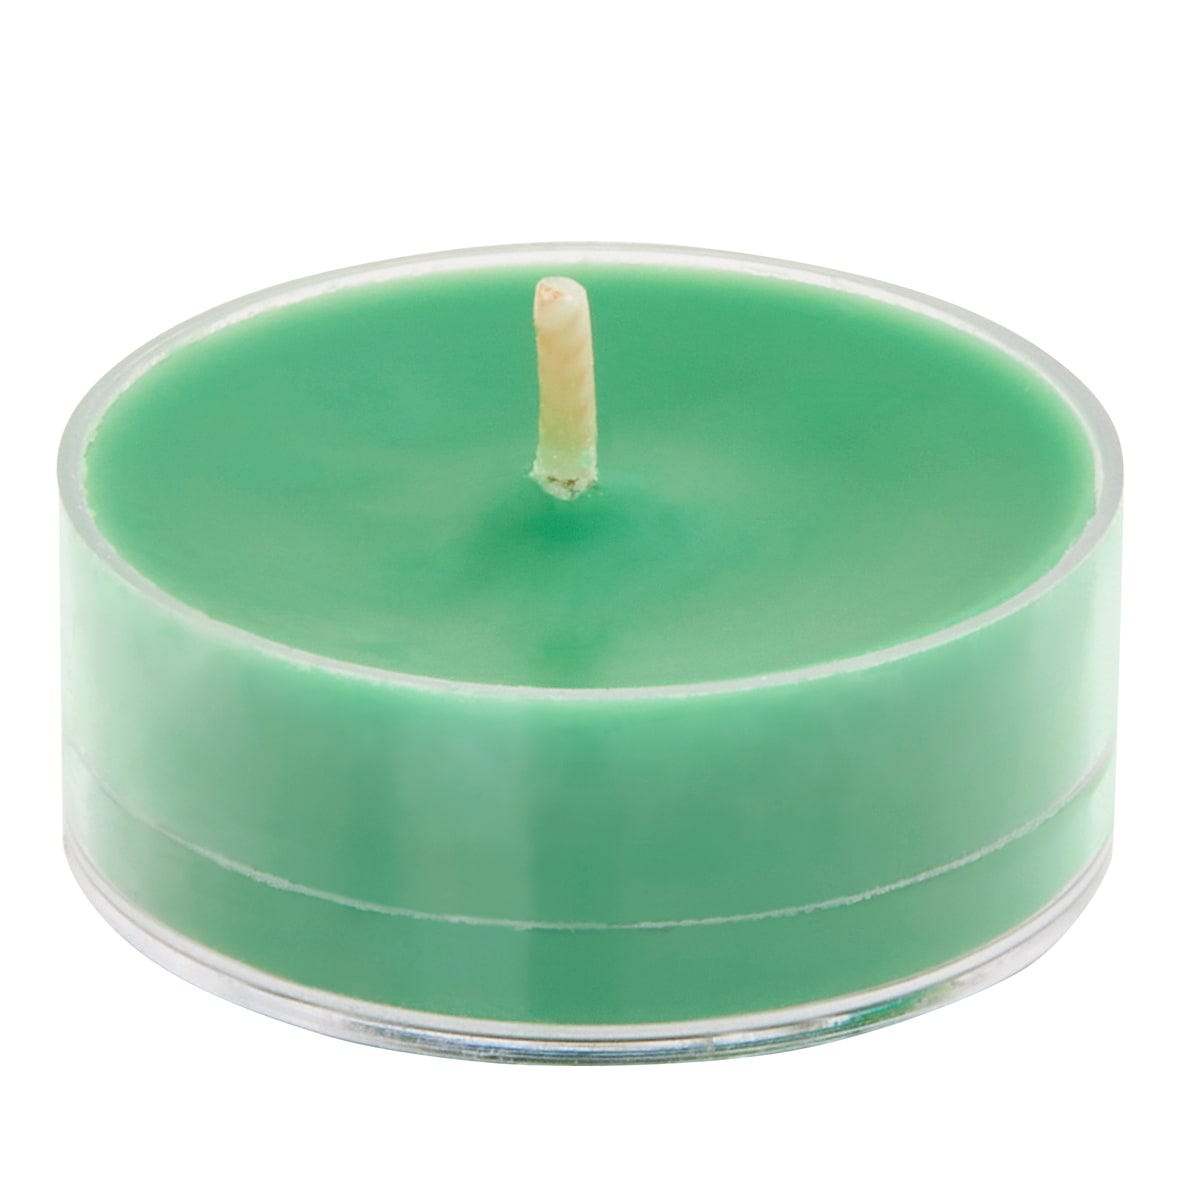 Evergreen Fir Universal Tealight Candles